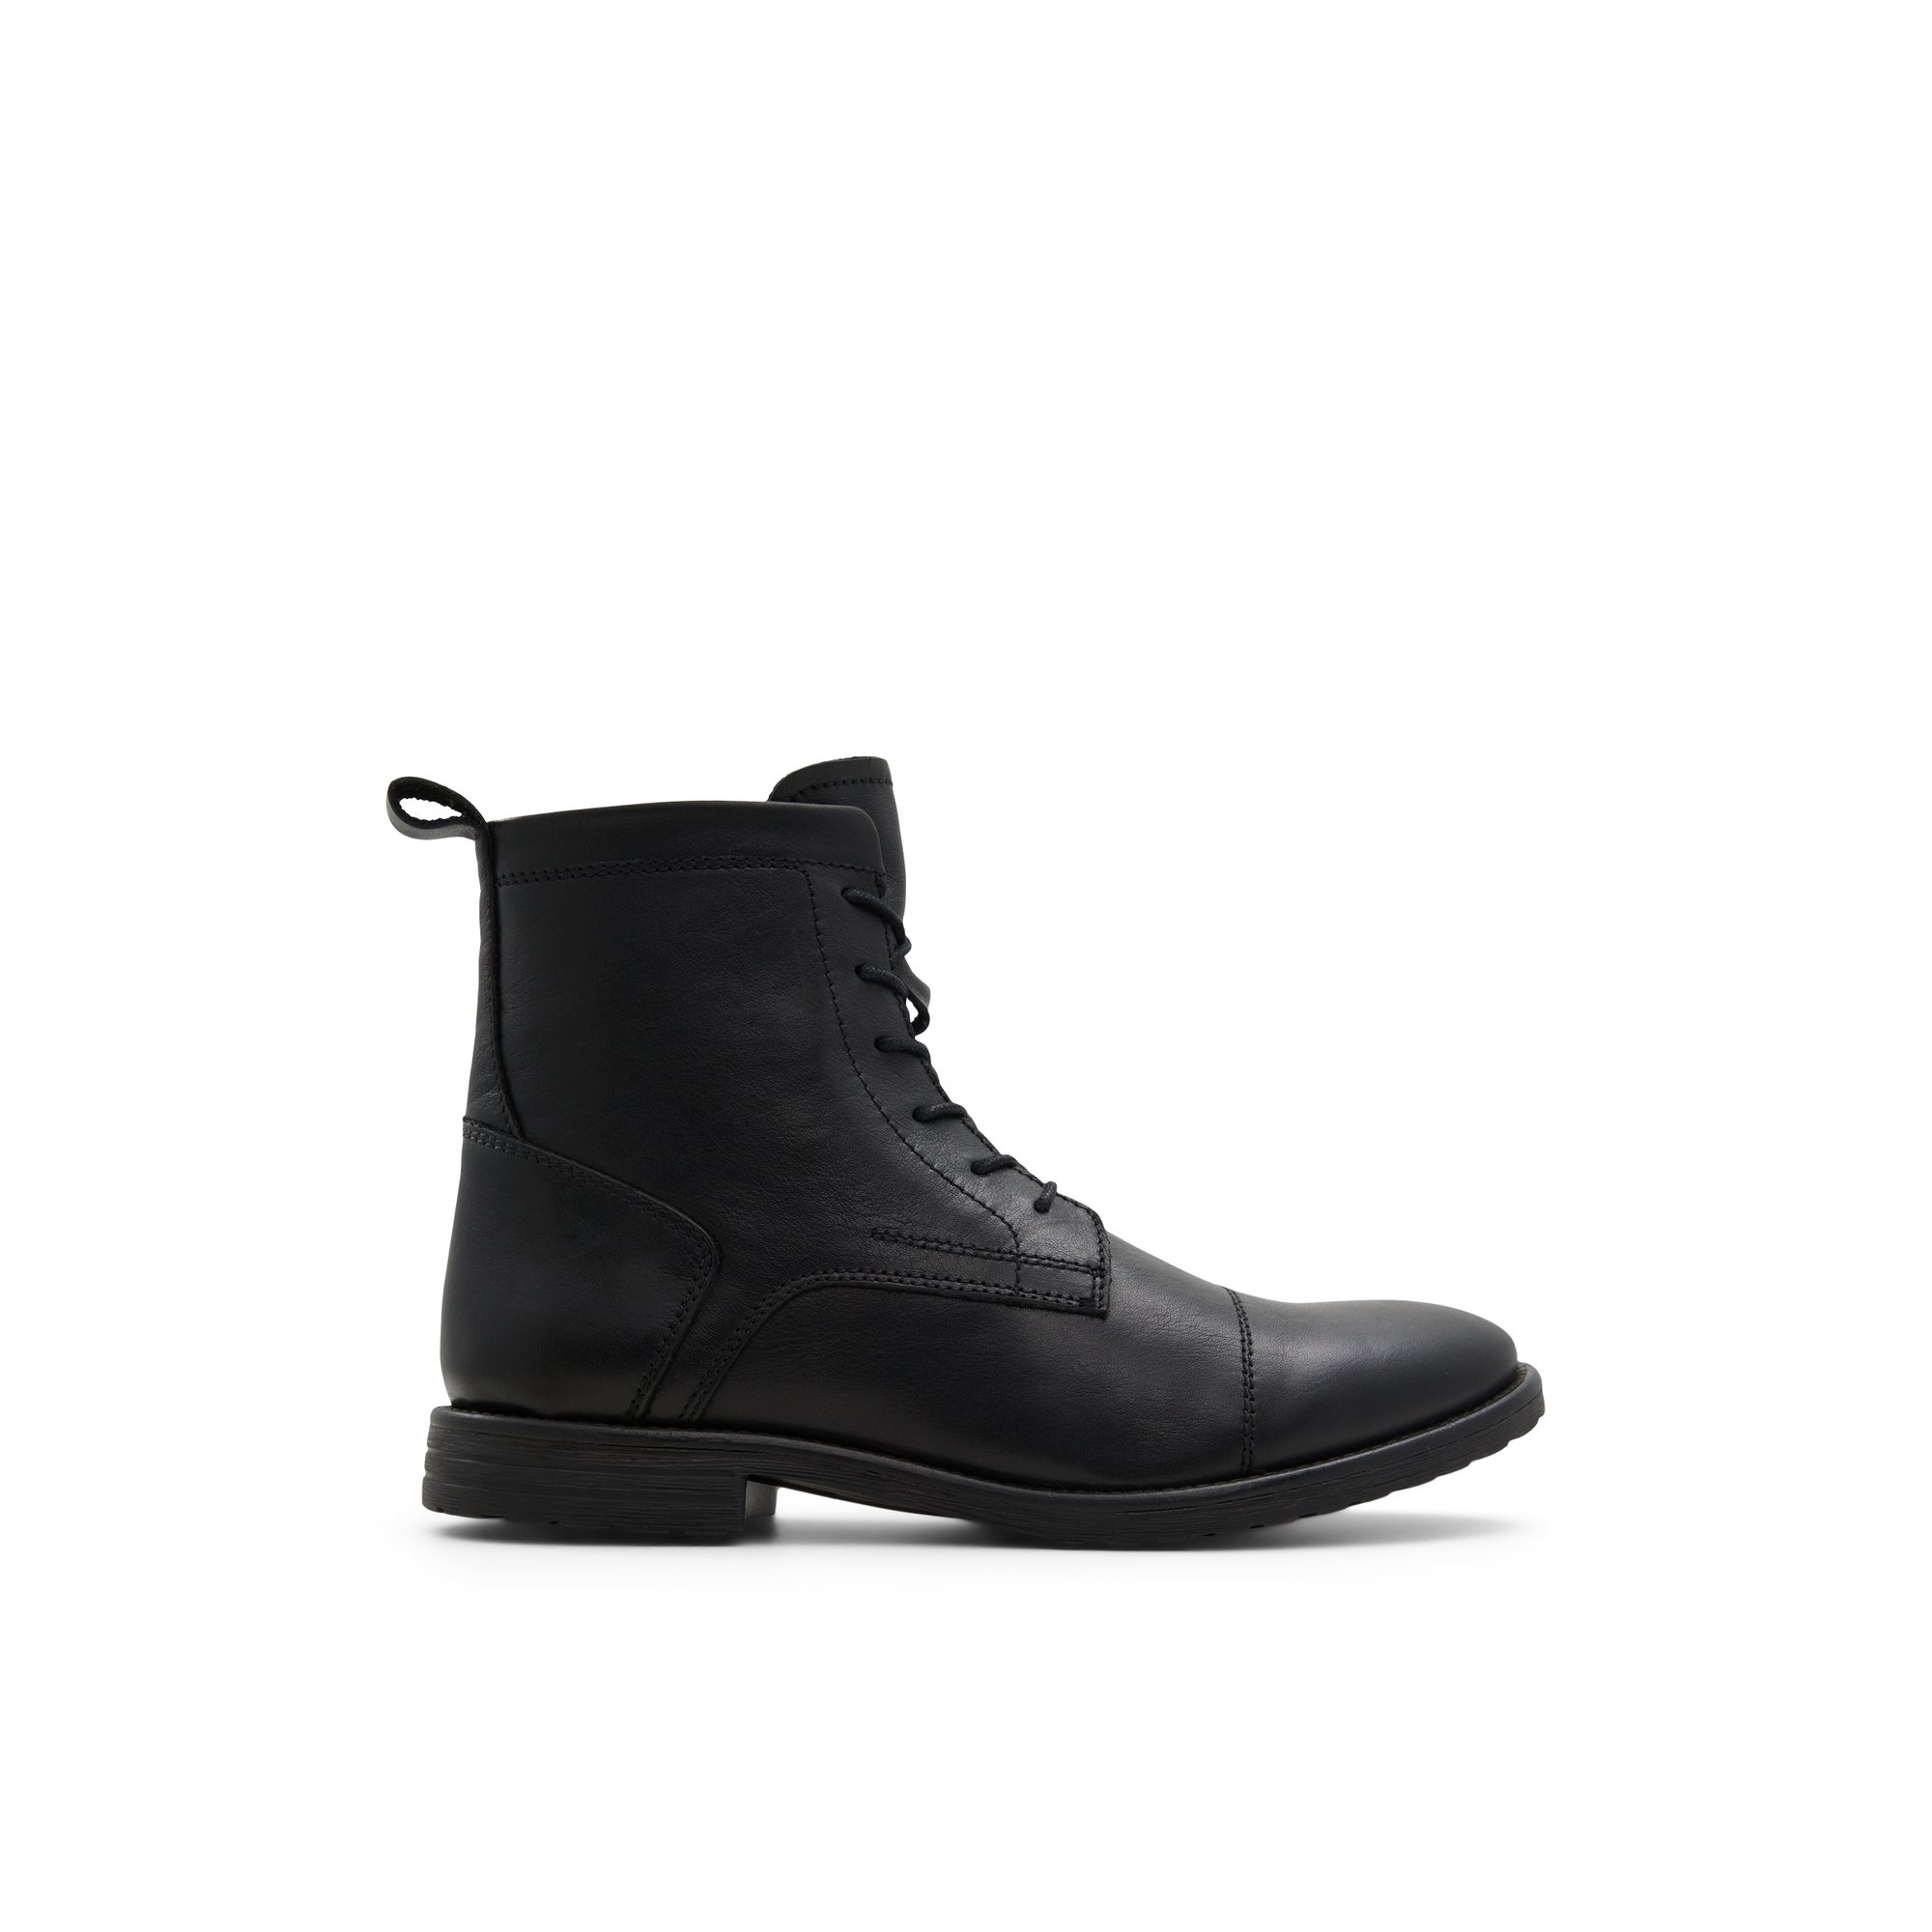 ALDO Theophilis - Men's Boots Lace-up - Black